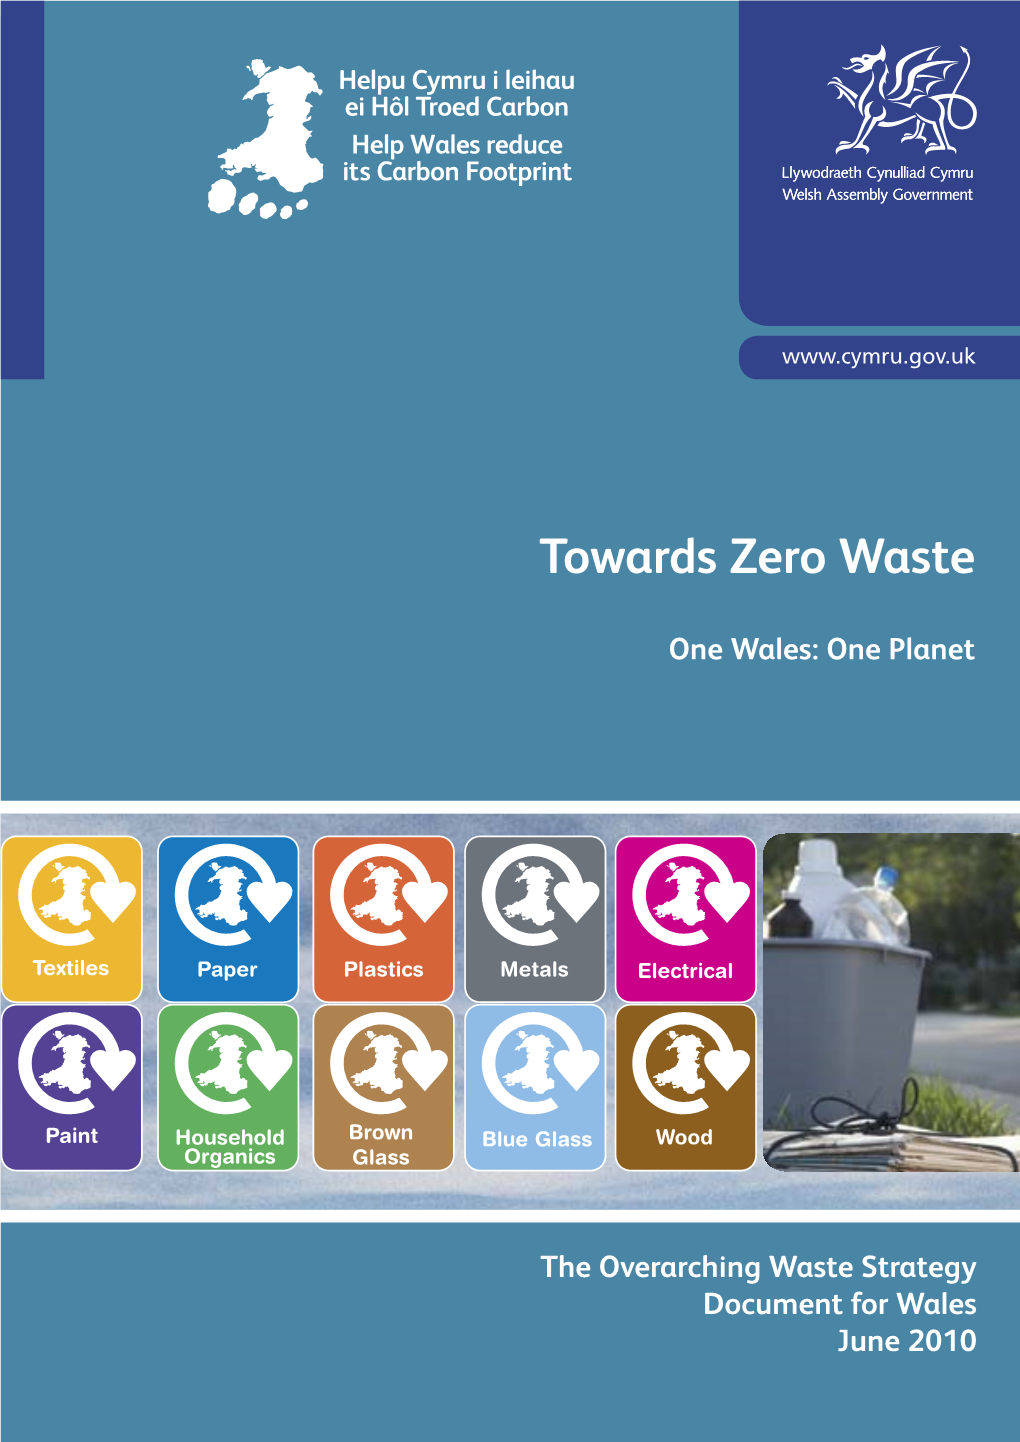 Towards Zero Waste Strategy